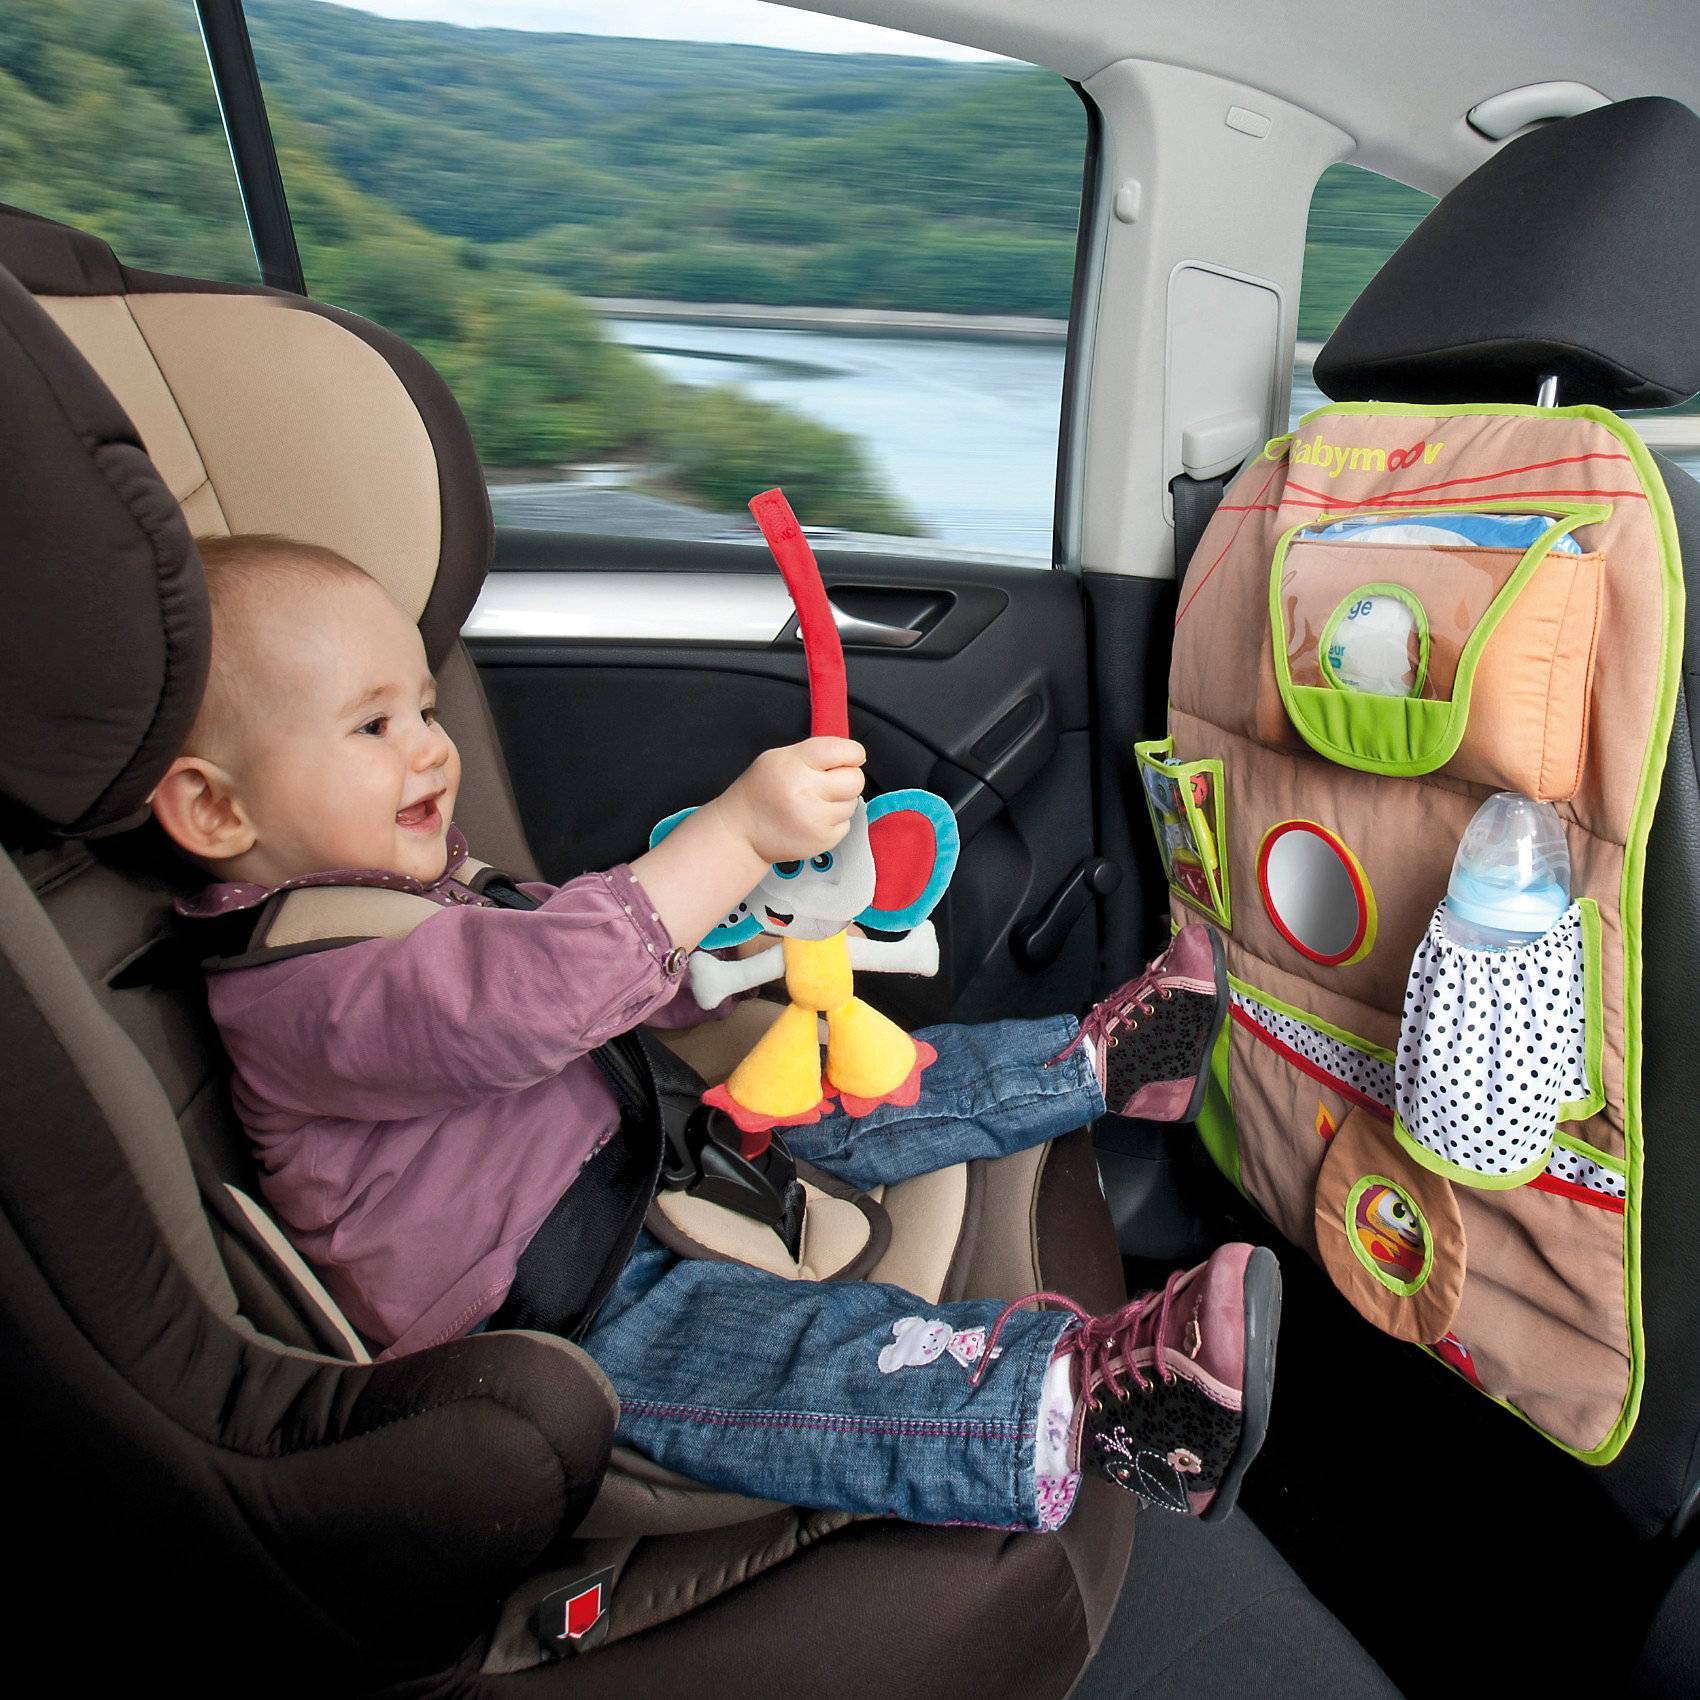 Путешествие на машине с ребенком